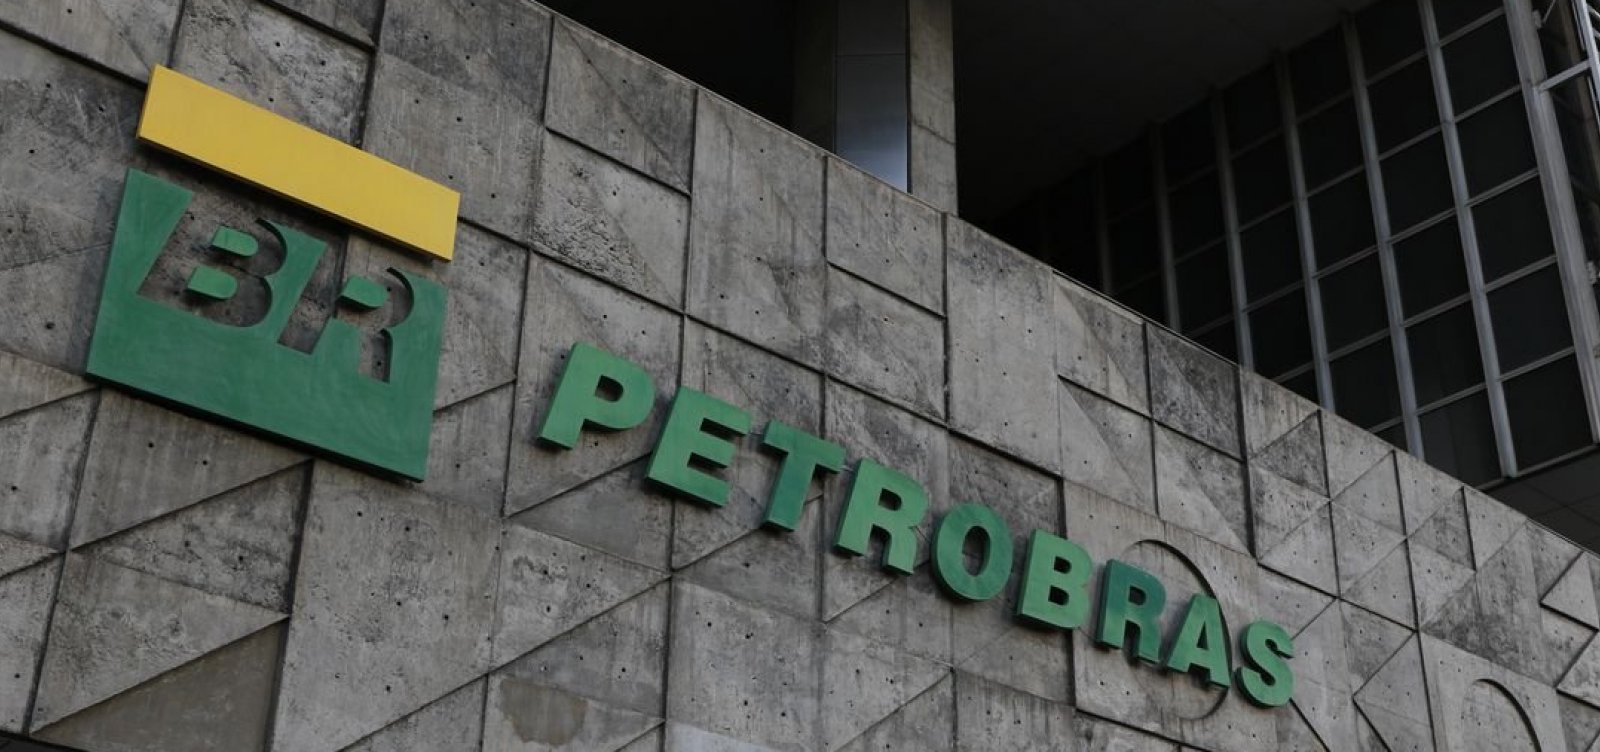 Petrobras desiste de vender poços terrestres, um deles situado na Bahia